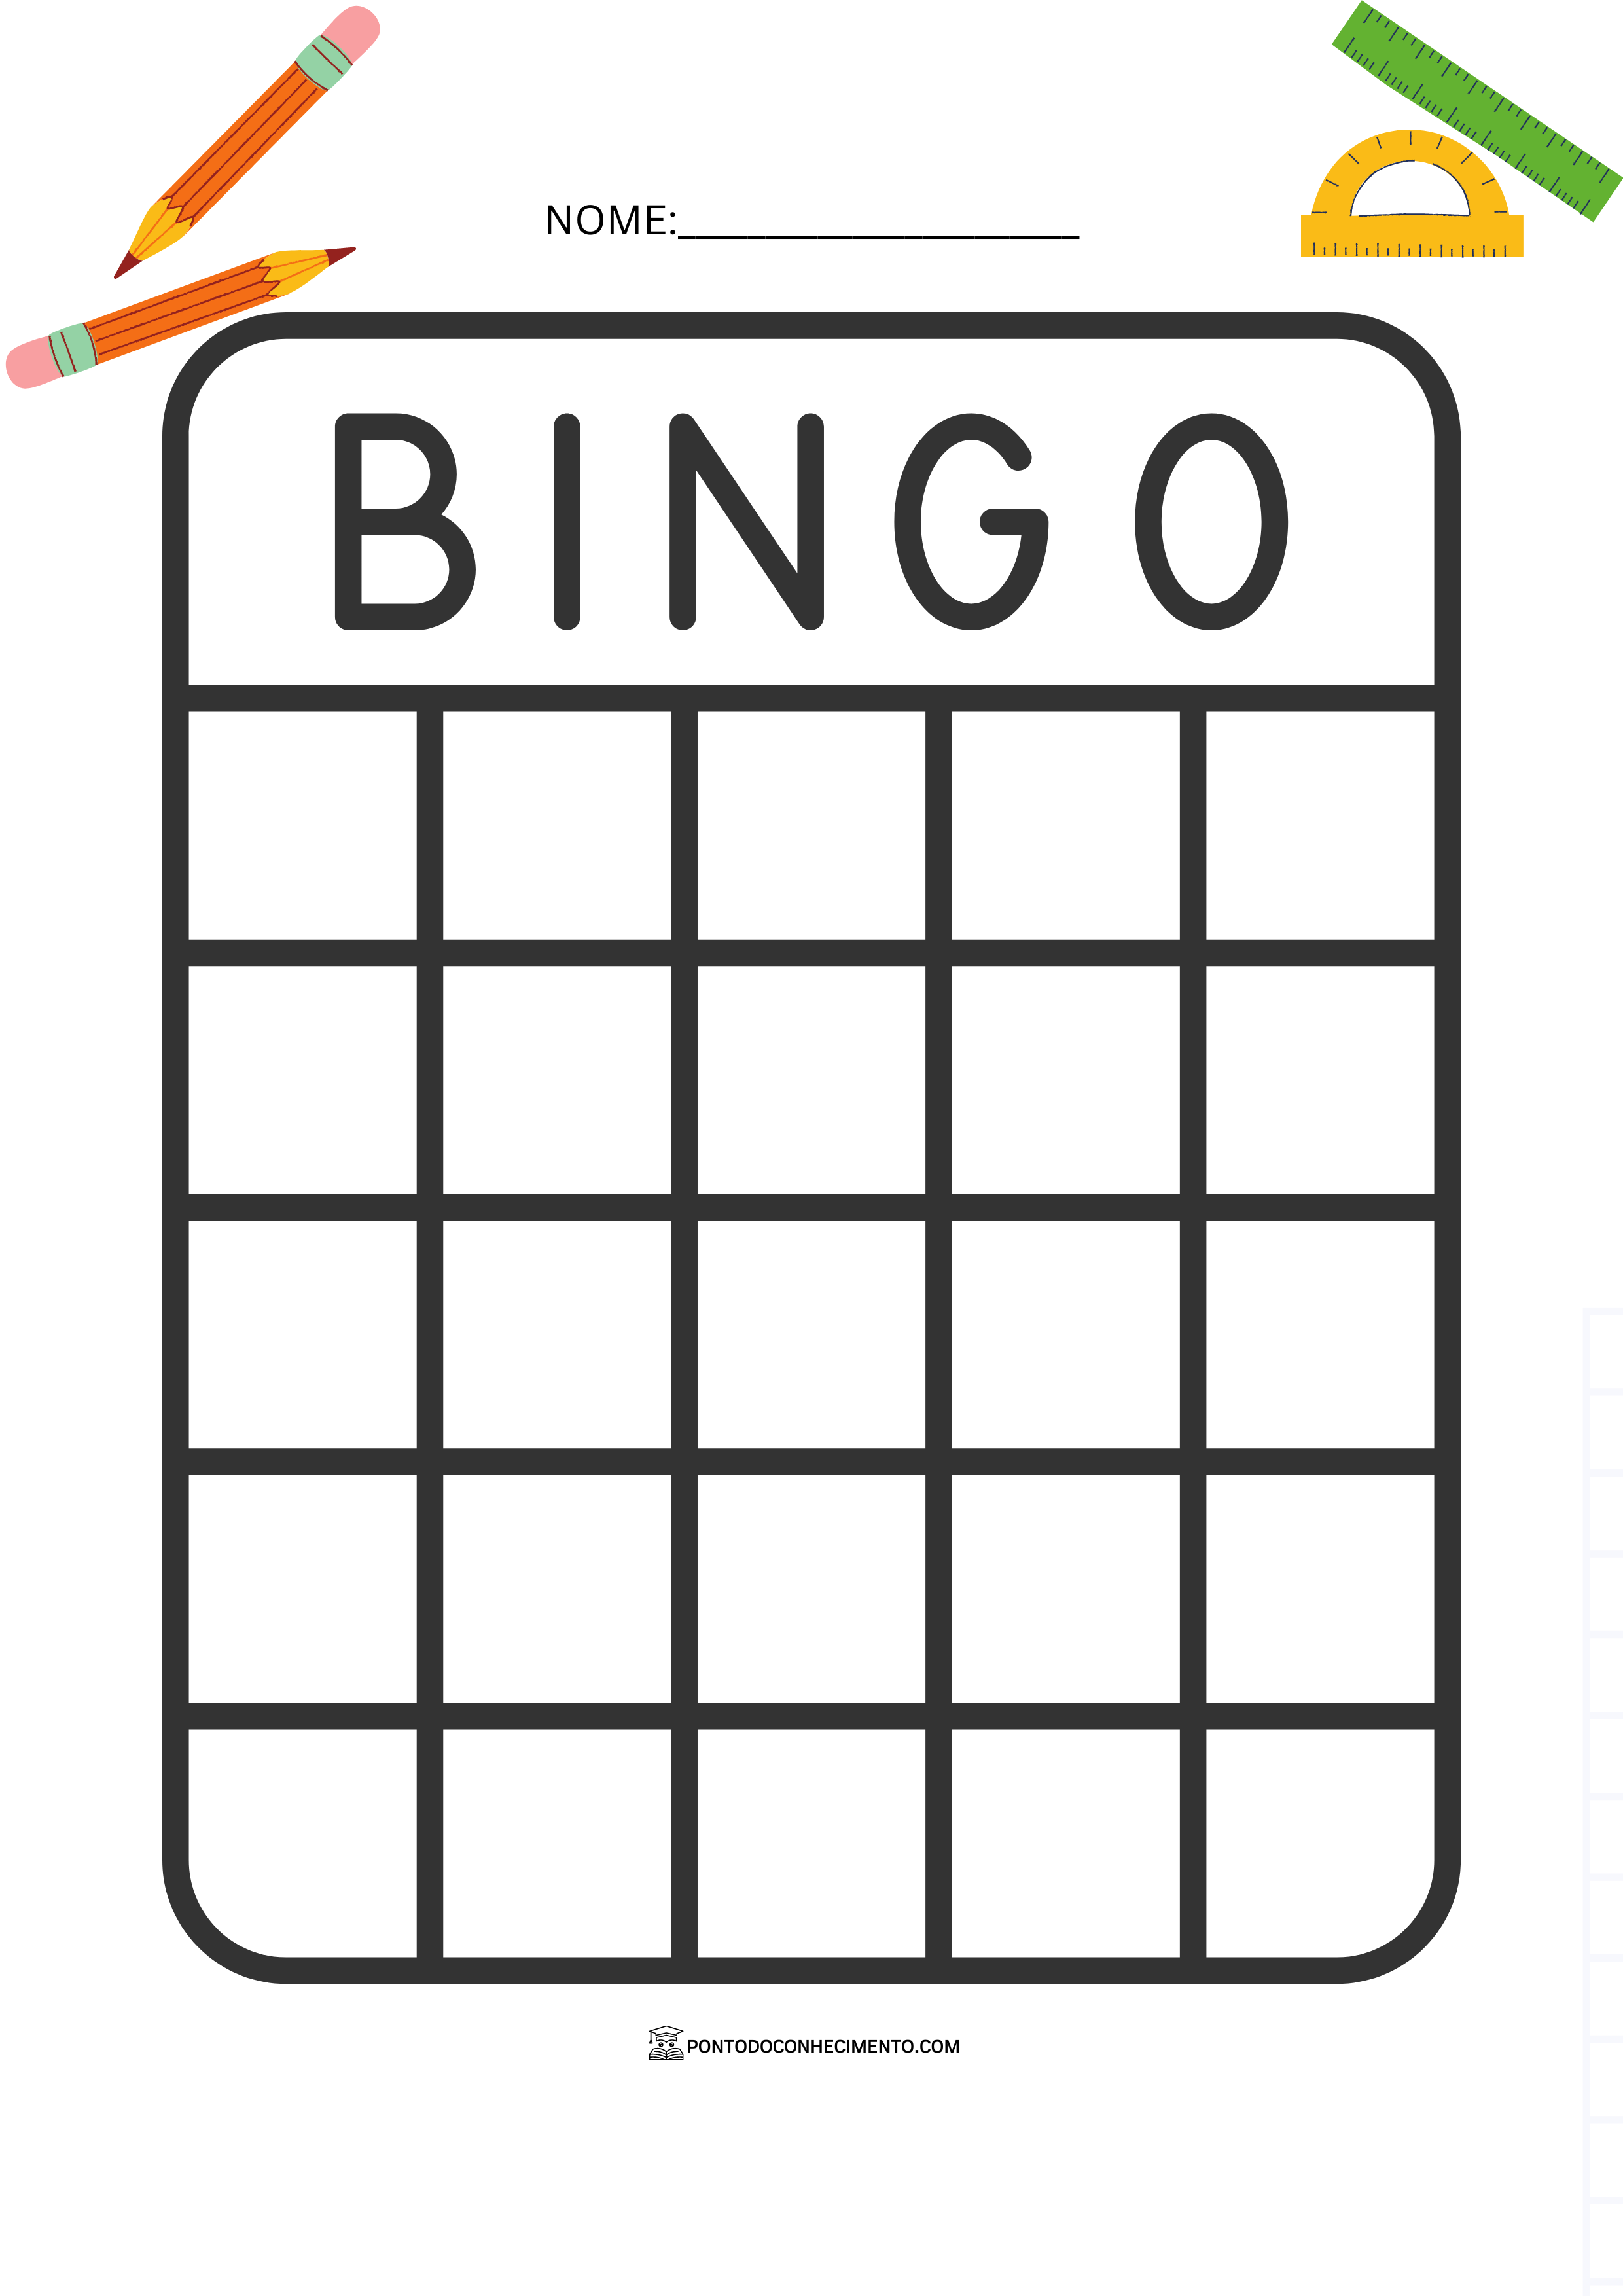 Modelos De Cartelas De Bingo Escolar Para Imprimir Ponto Do Conhecimento